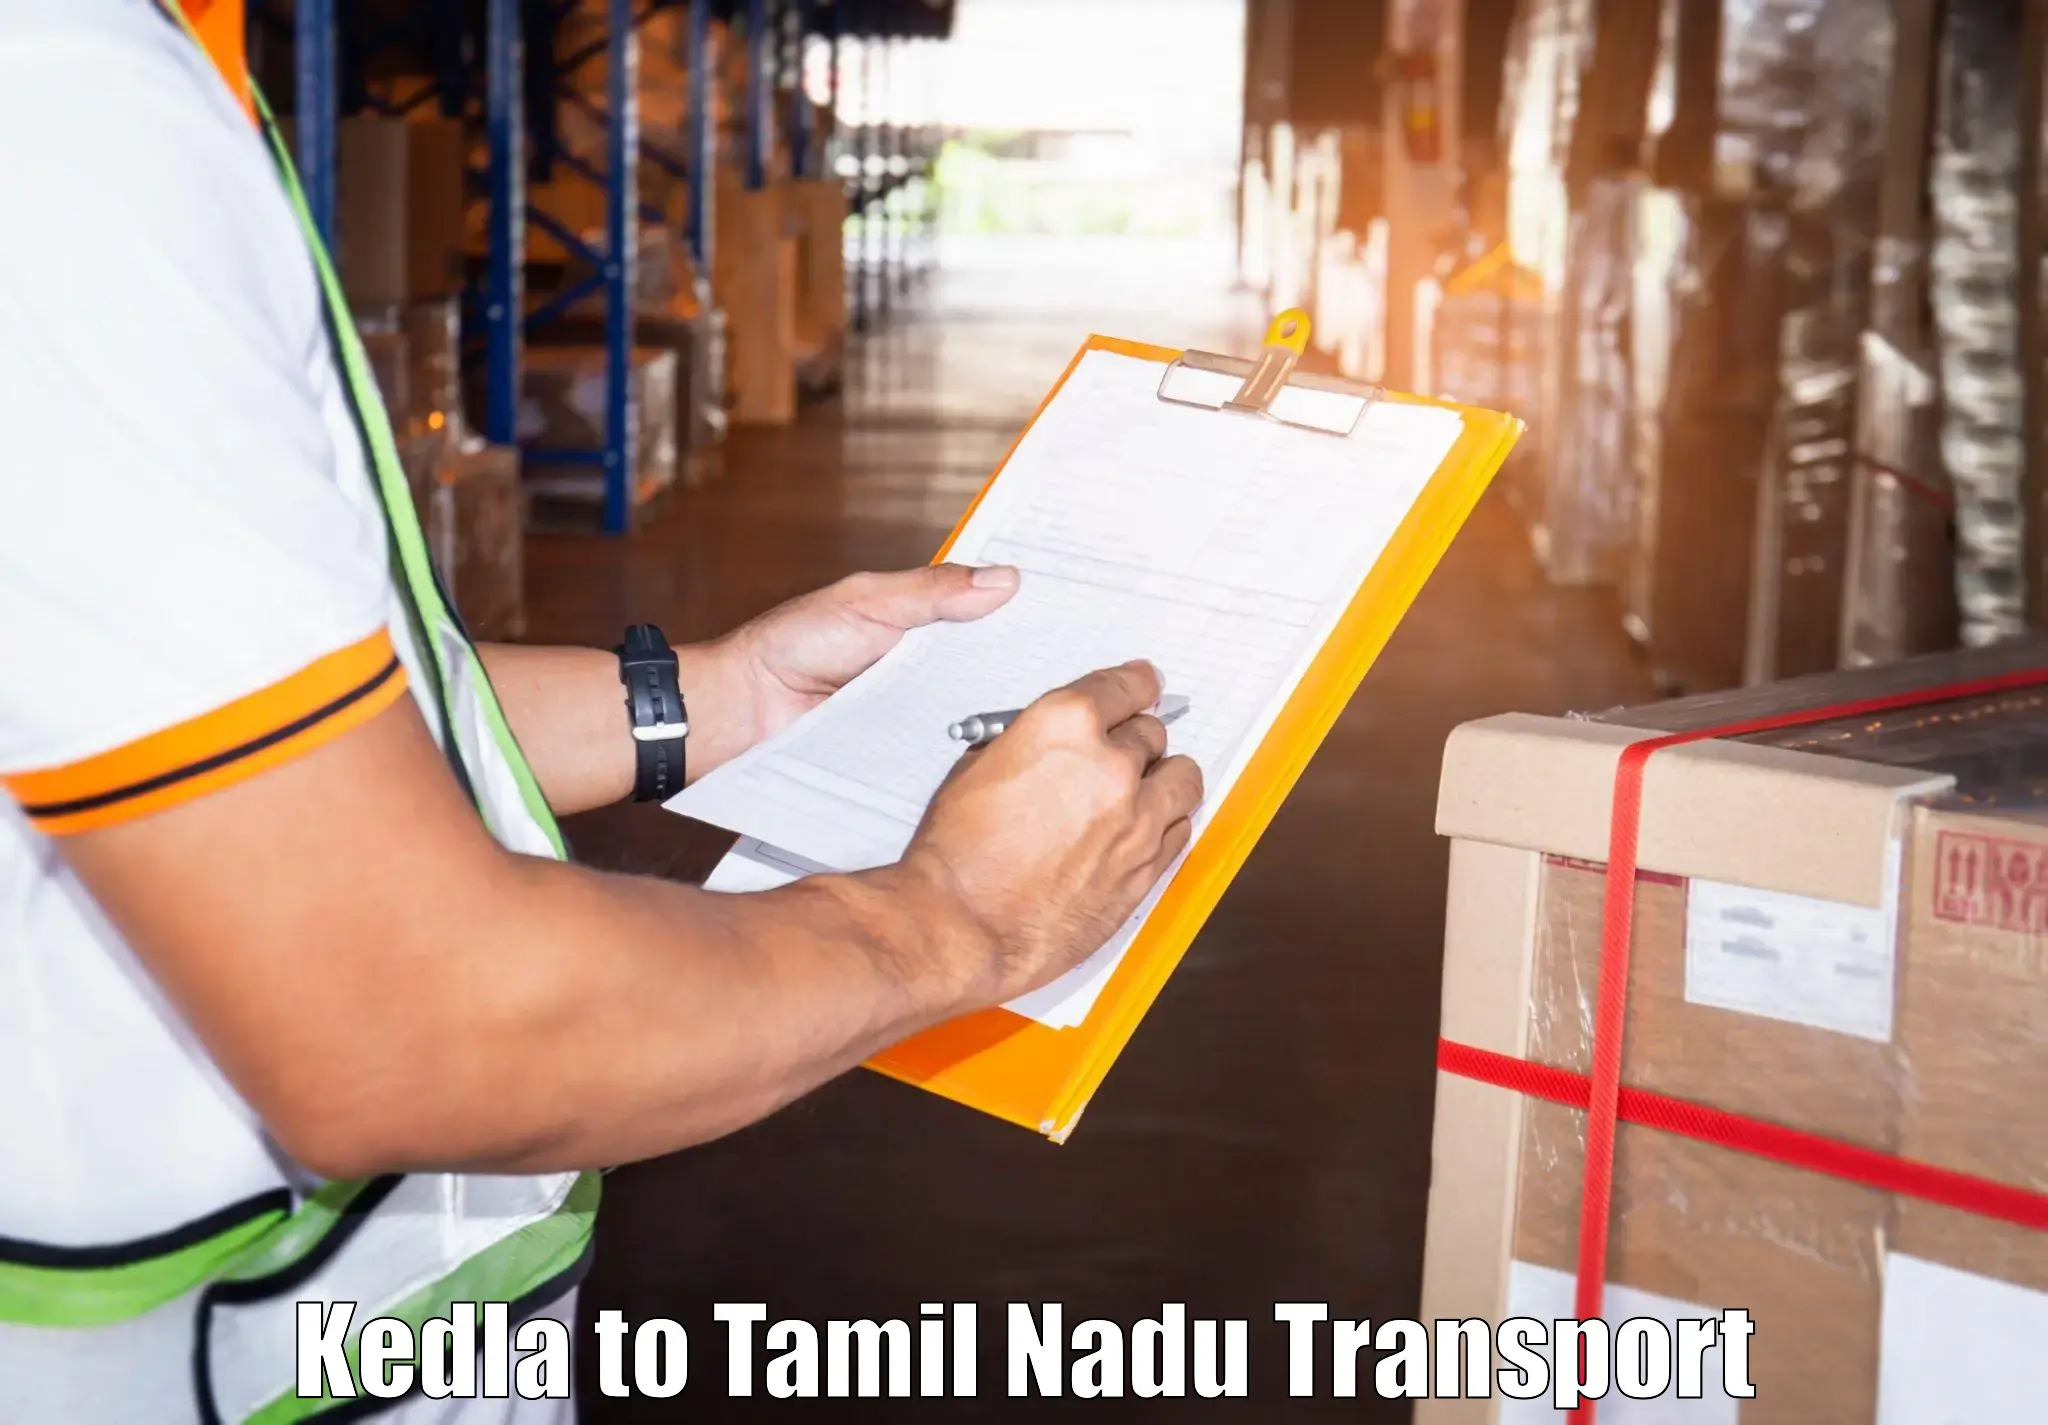 Transport shared services Kedla to Villupuram